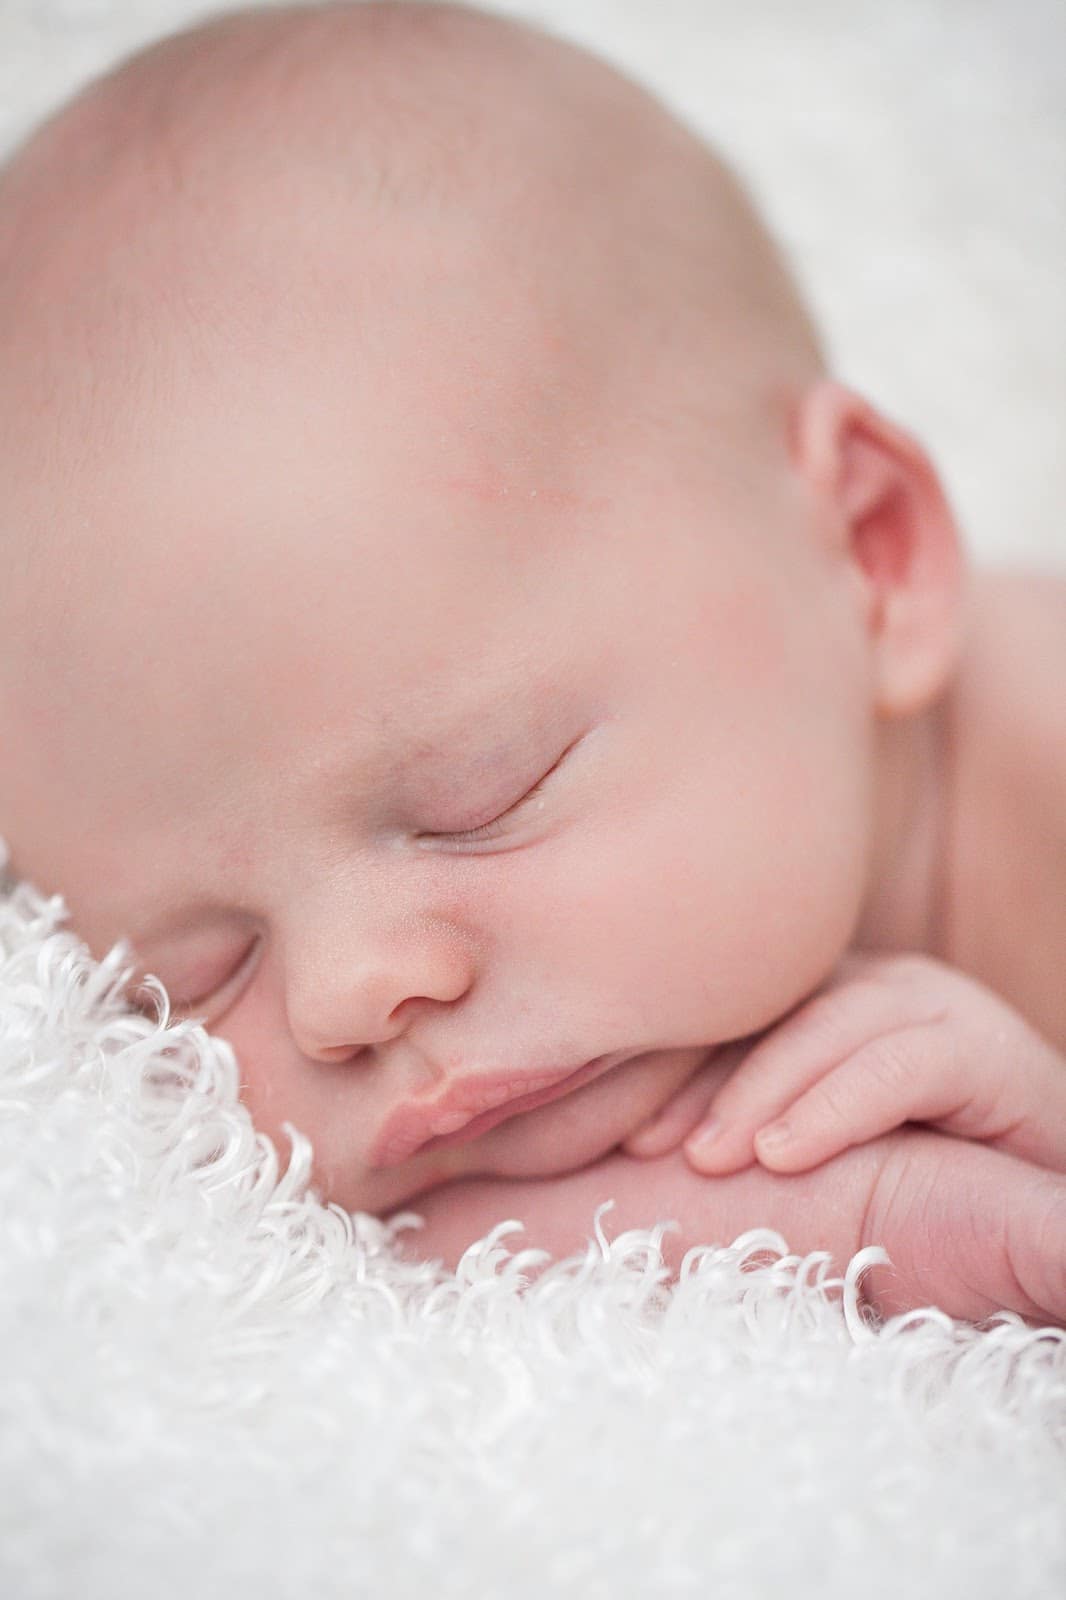 Newborn baby asleep during newborn photoshoot. 